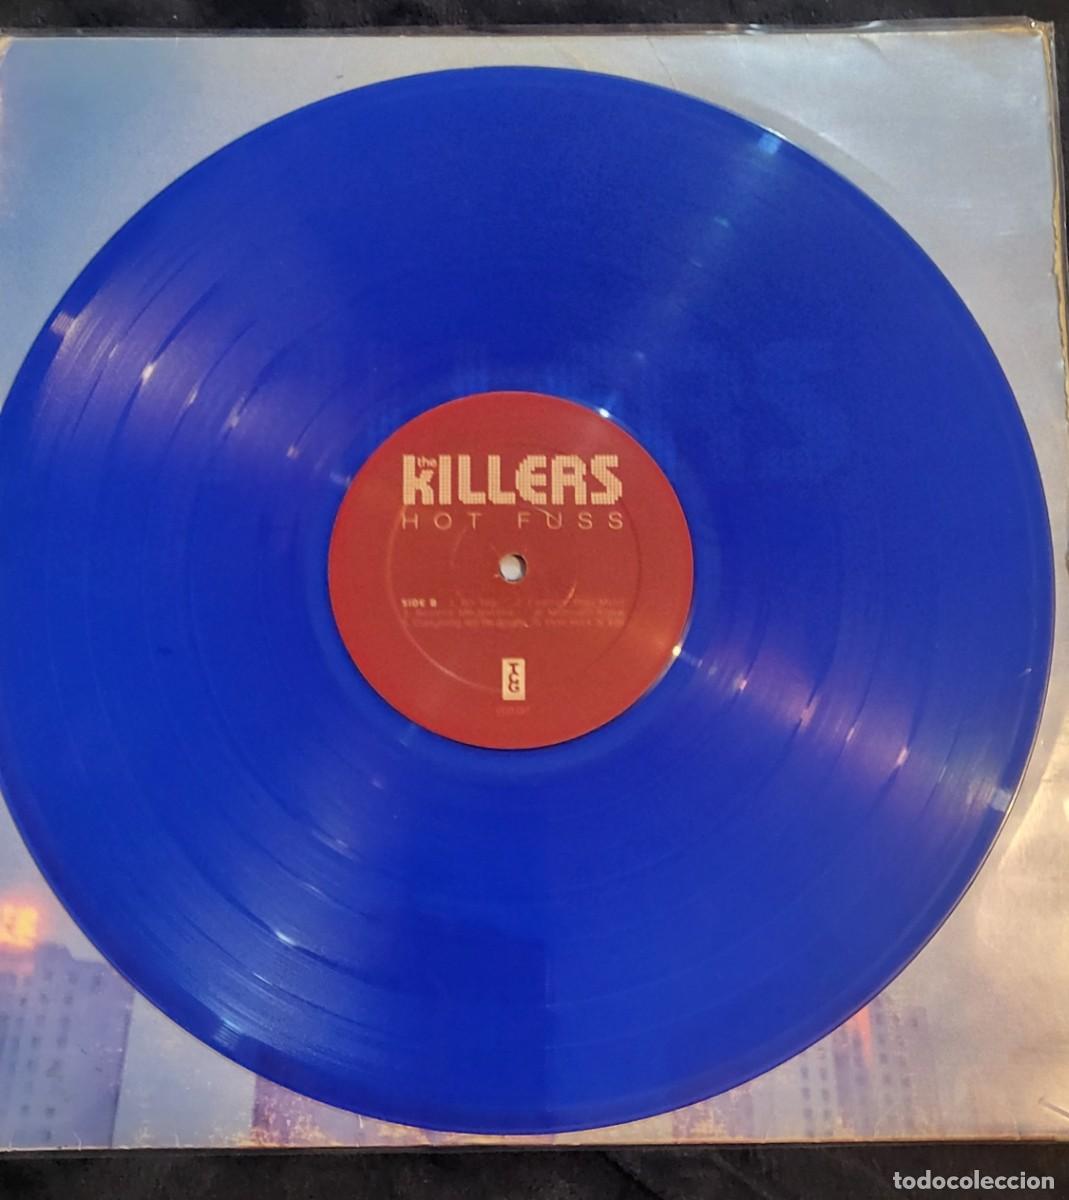 まとめ買い歓迎 HOT the killers キラーズ HOT FUSS 洋楽 レコード ...